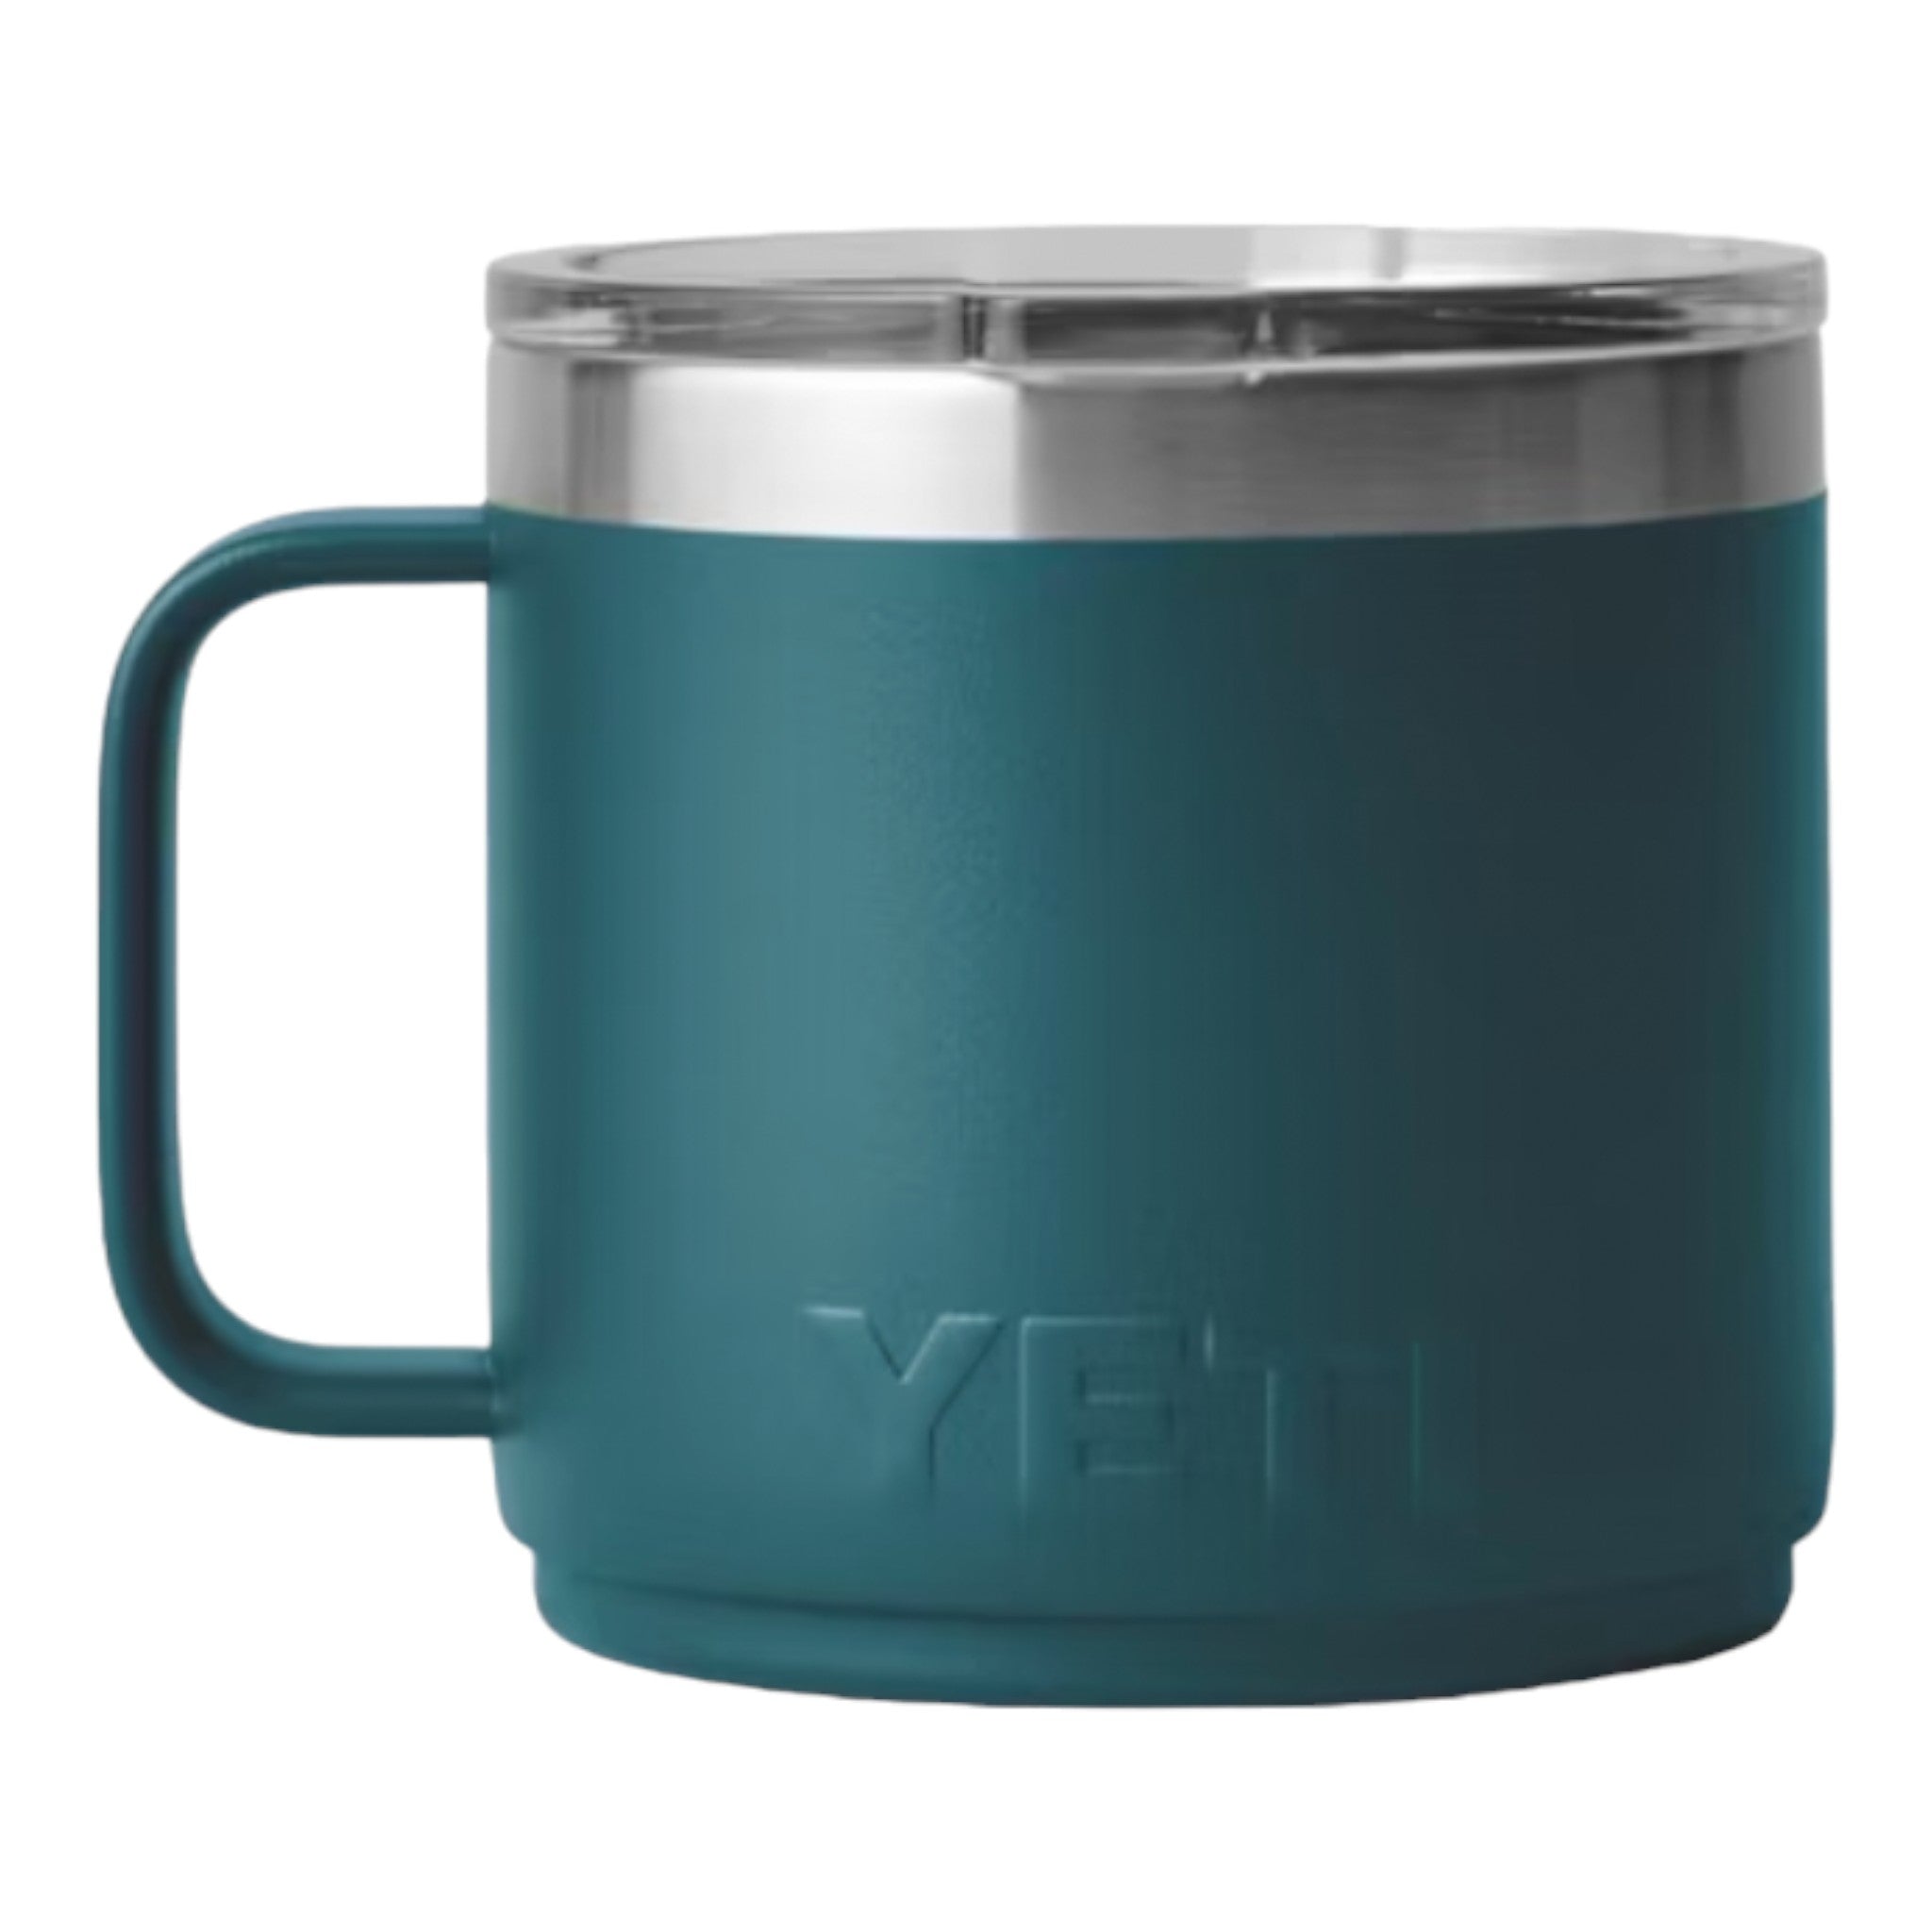 YETI - Rambler 14oz Mug 2.0 MS - Agave Teal